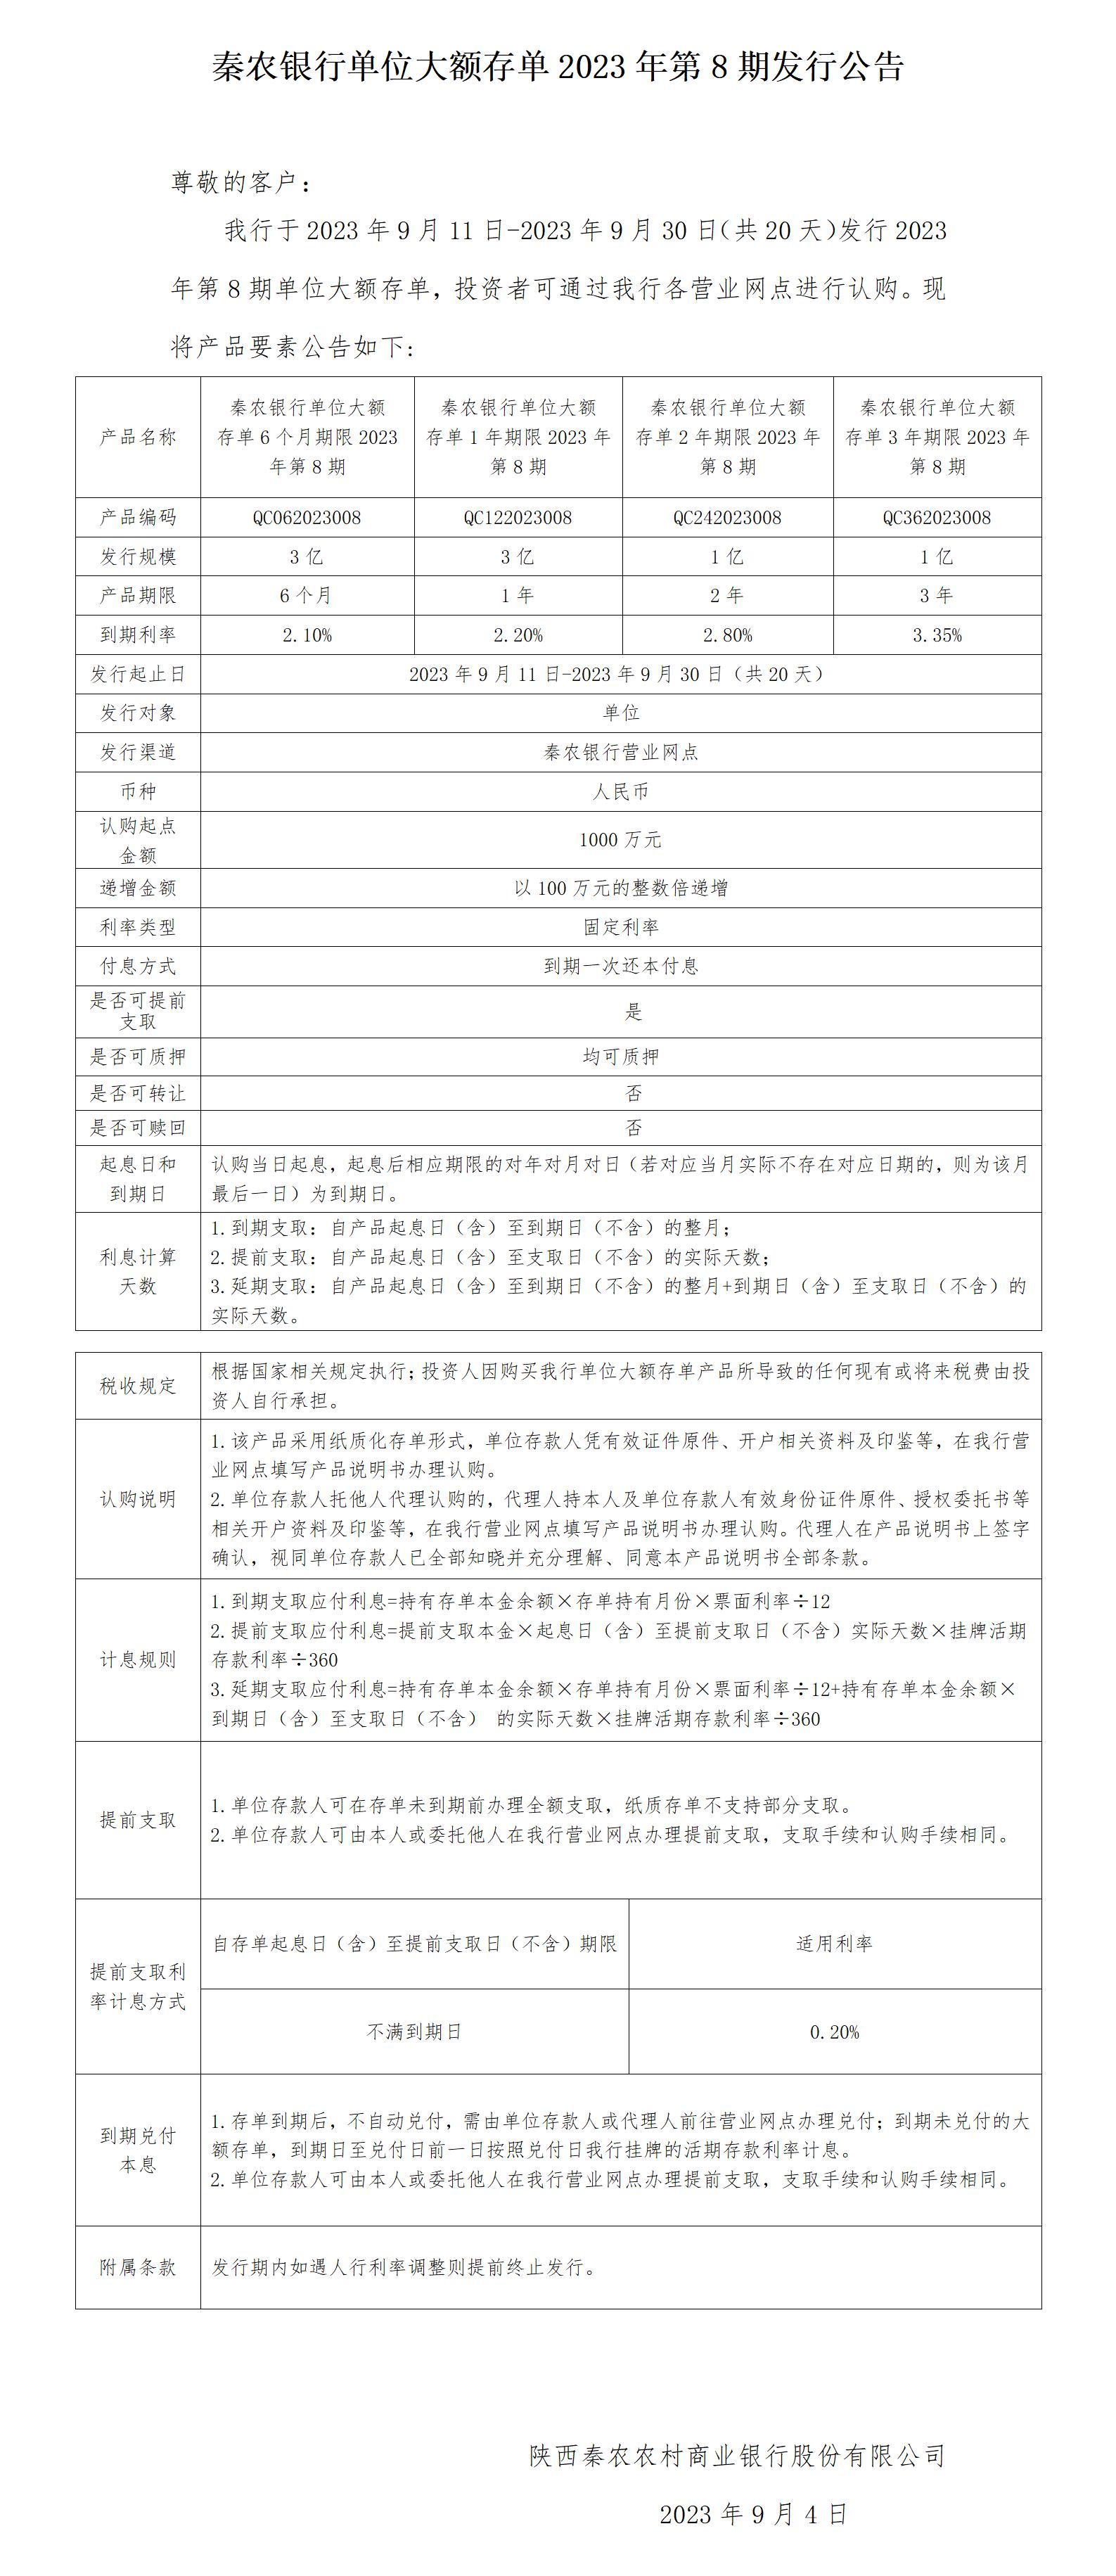 秦农银行单位大额存单2023年第8期发行公告2023.9.4_01(4)(1).jpg